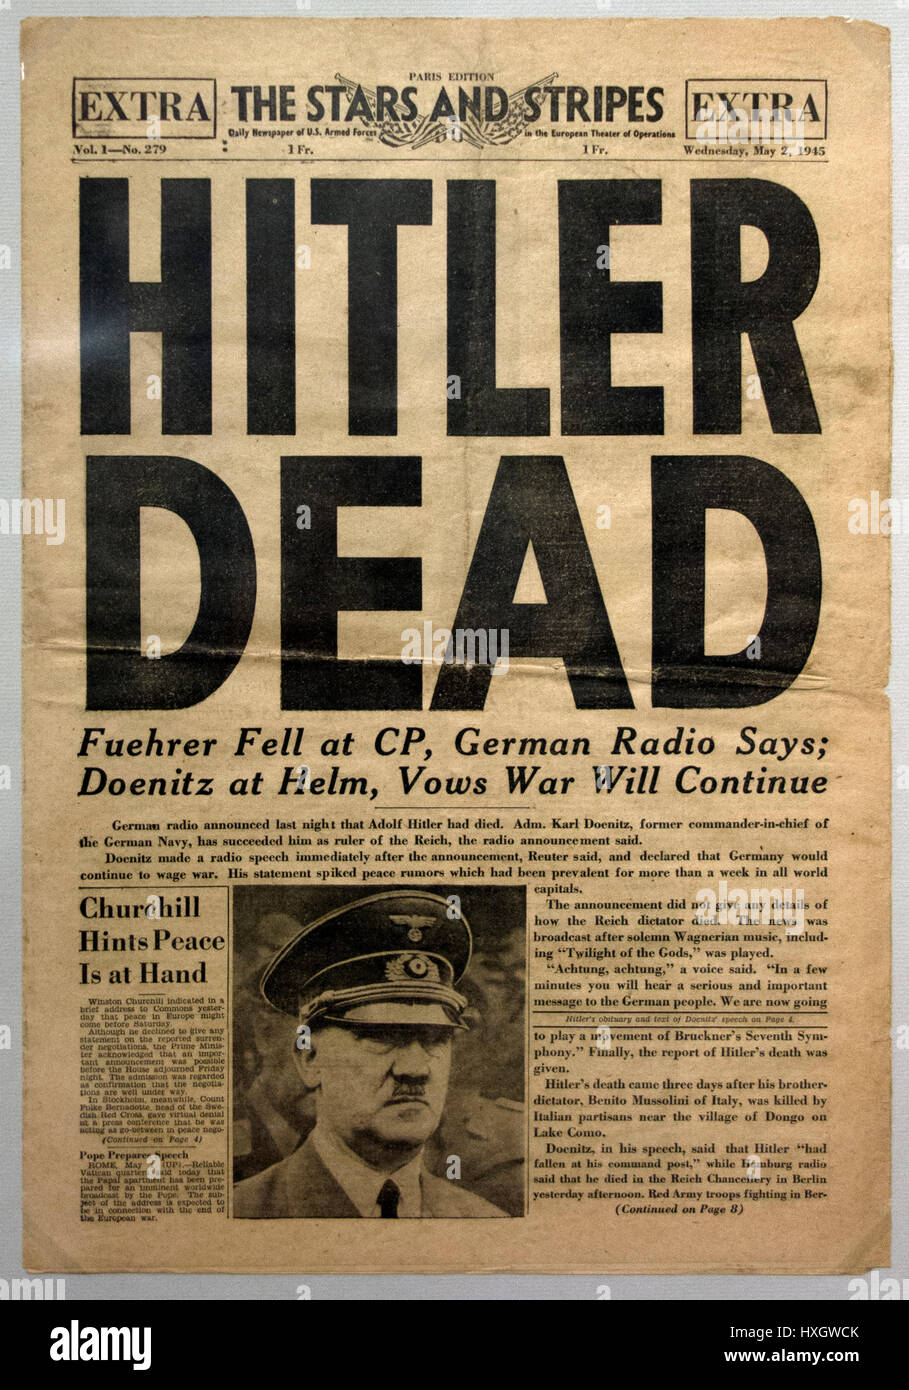 Hitler tot Zeitung - Special Edition von der US-Soldaten Zeitung The Stars and Stripes nach dem Tod von Adolf Hitler, Paris Ausgabe, 2. Mai 1945. Stockfoto